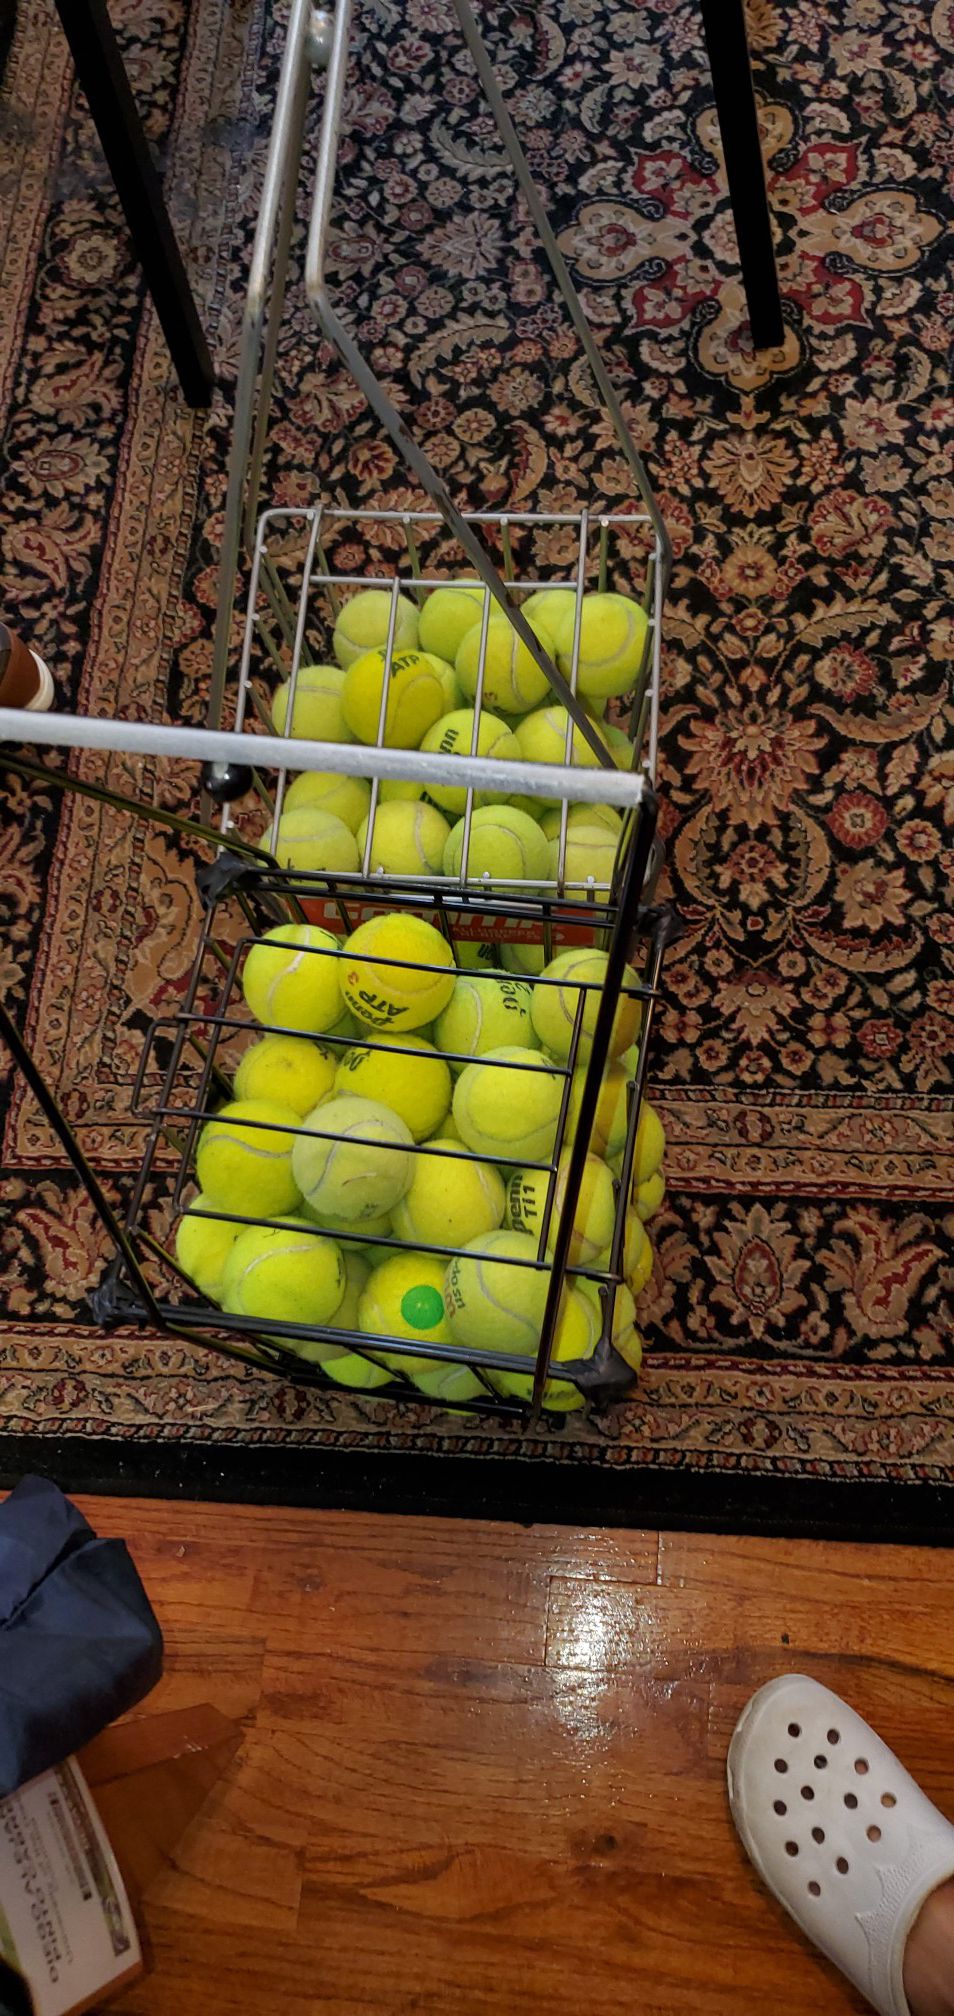 Tennis balls 2 hoopers